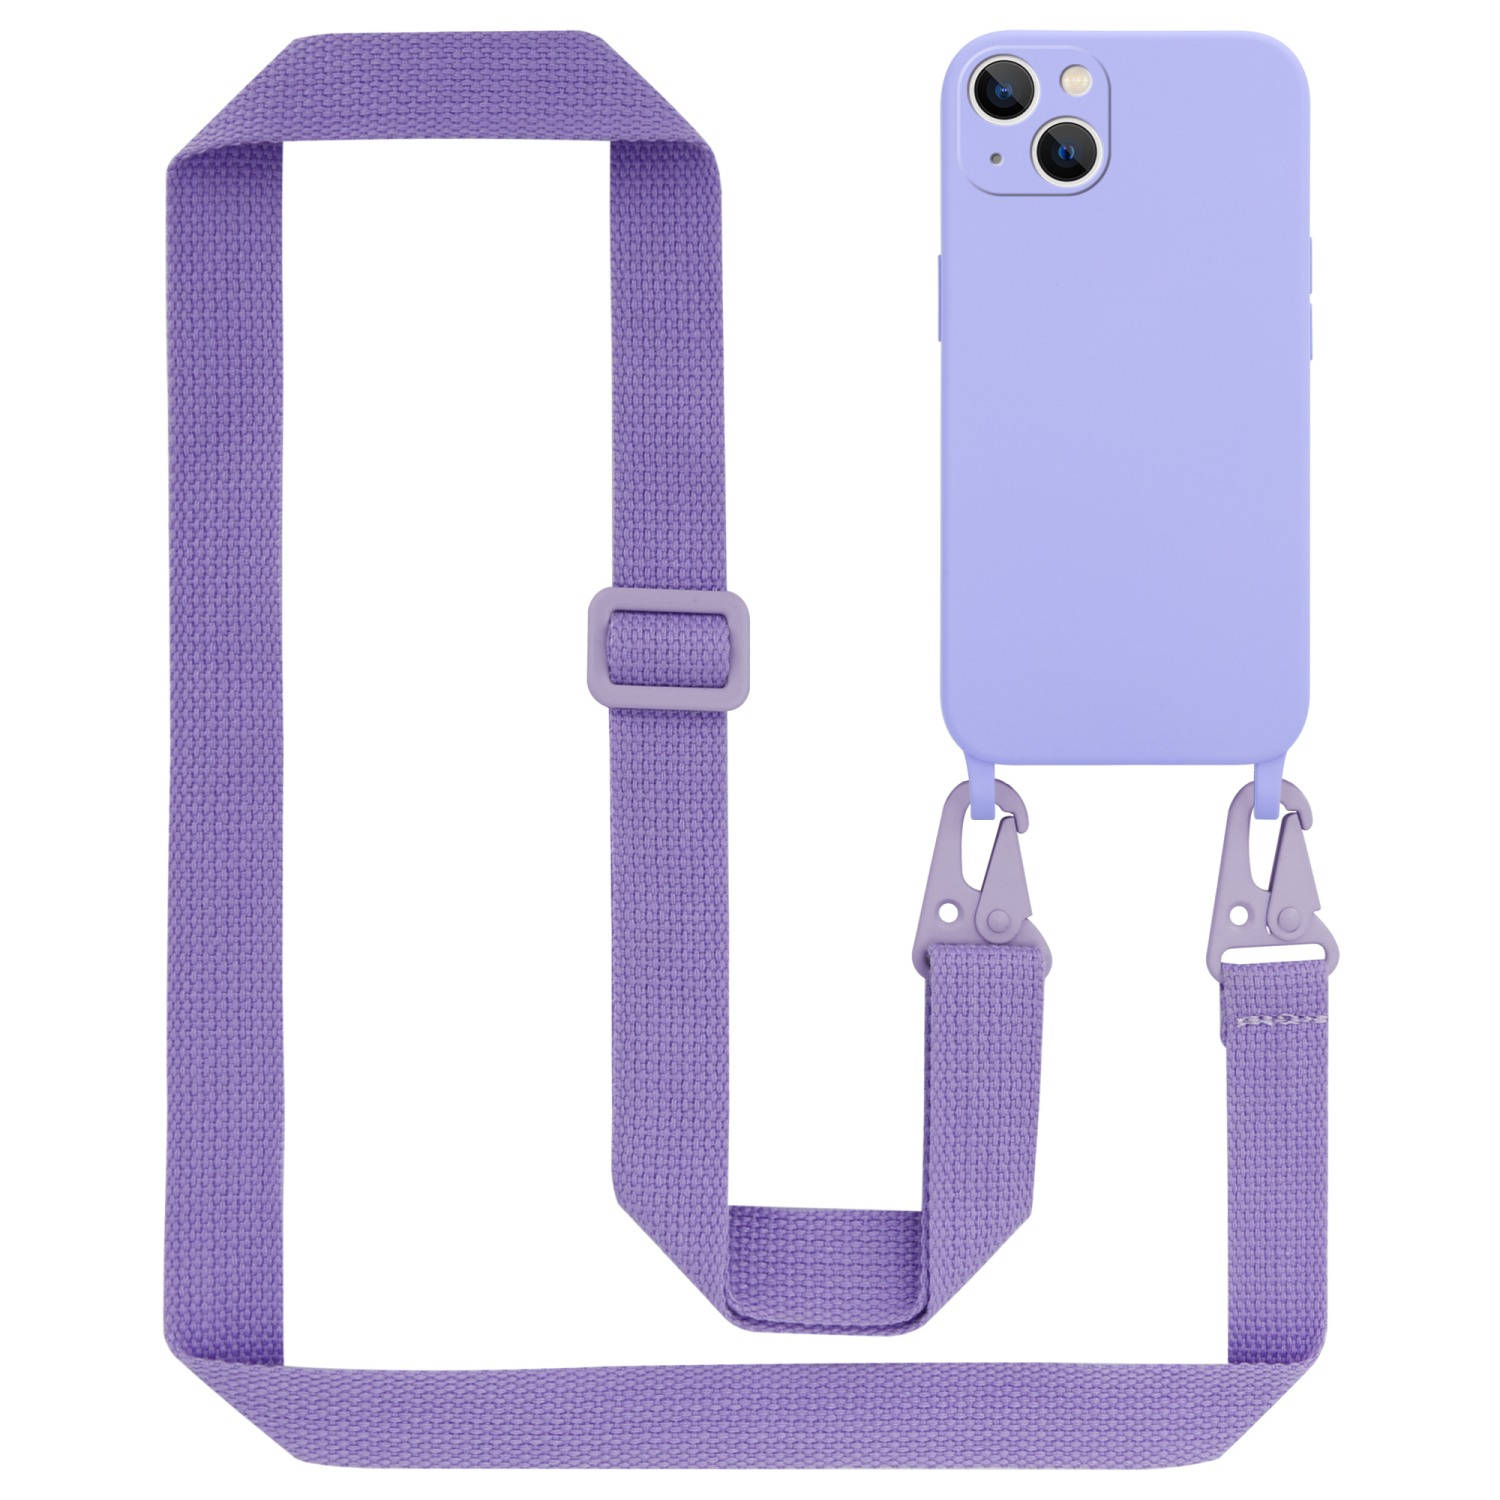 Cadorabo Mobiele telefoon ketting voor Apple iPhone 14 in LIQUID LICHT PAARS - Silicone beschermhoes met lengte verstelbare koord riem